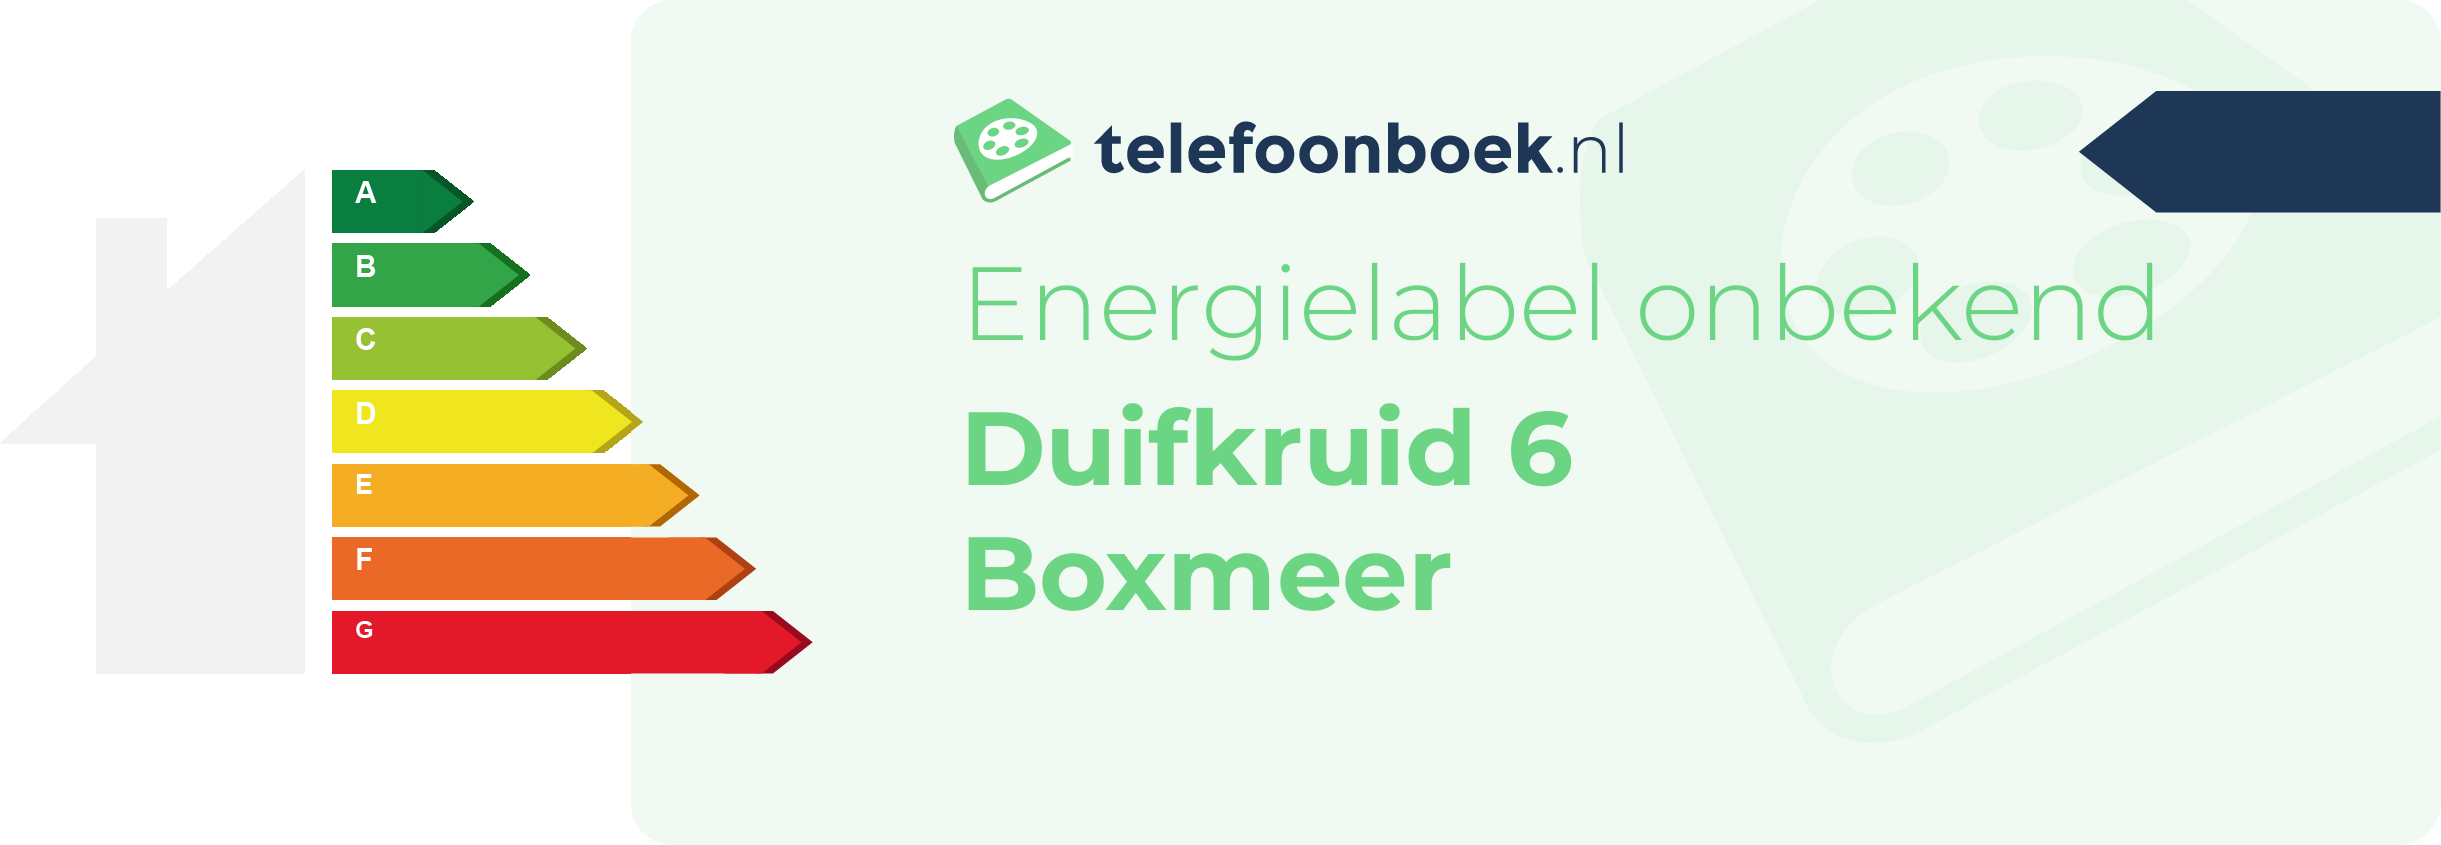 Energielabel Duifkruid 6 Boxmeer